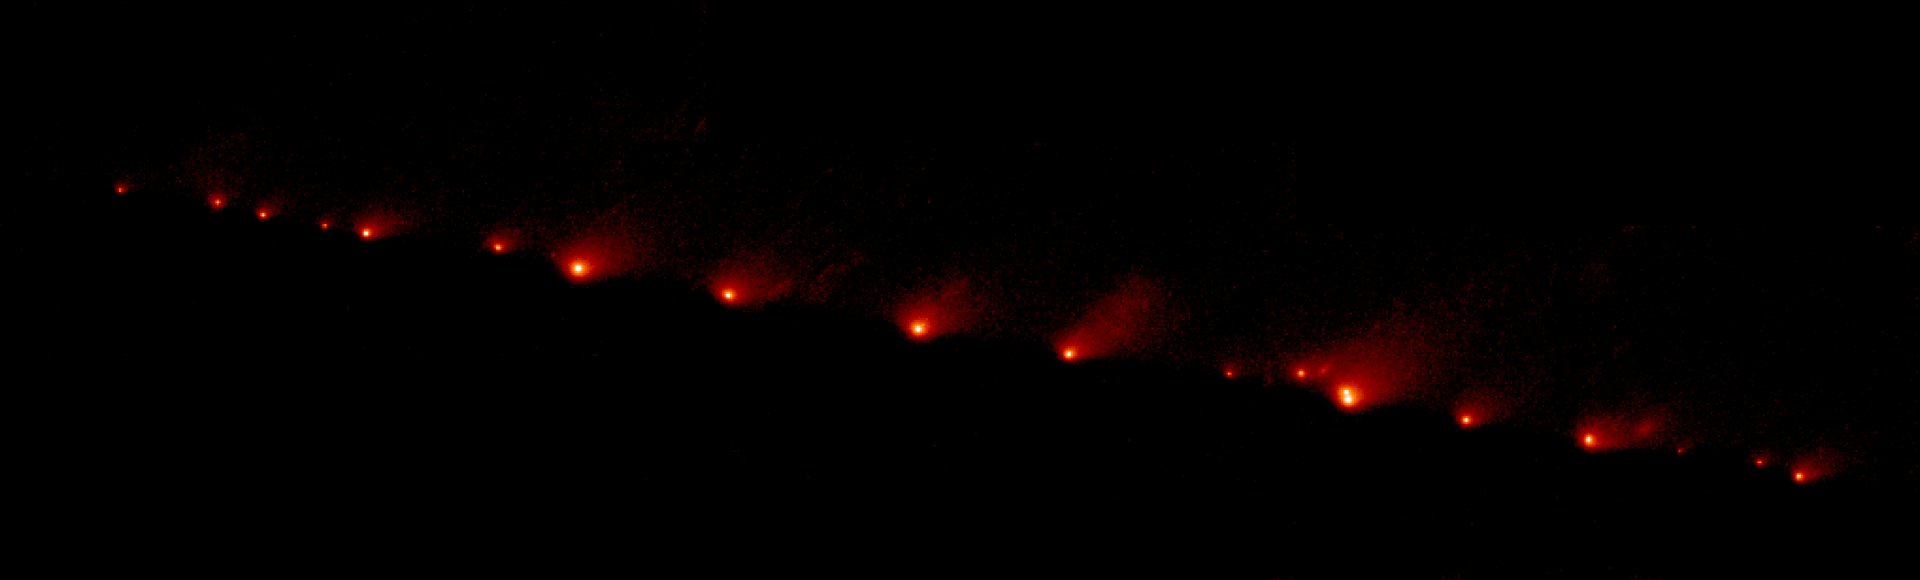 ハッブル宇宙望遠鏡が撮影したシューメーカー・レヴィ第9彗星 wiki